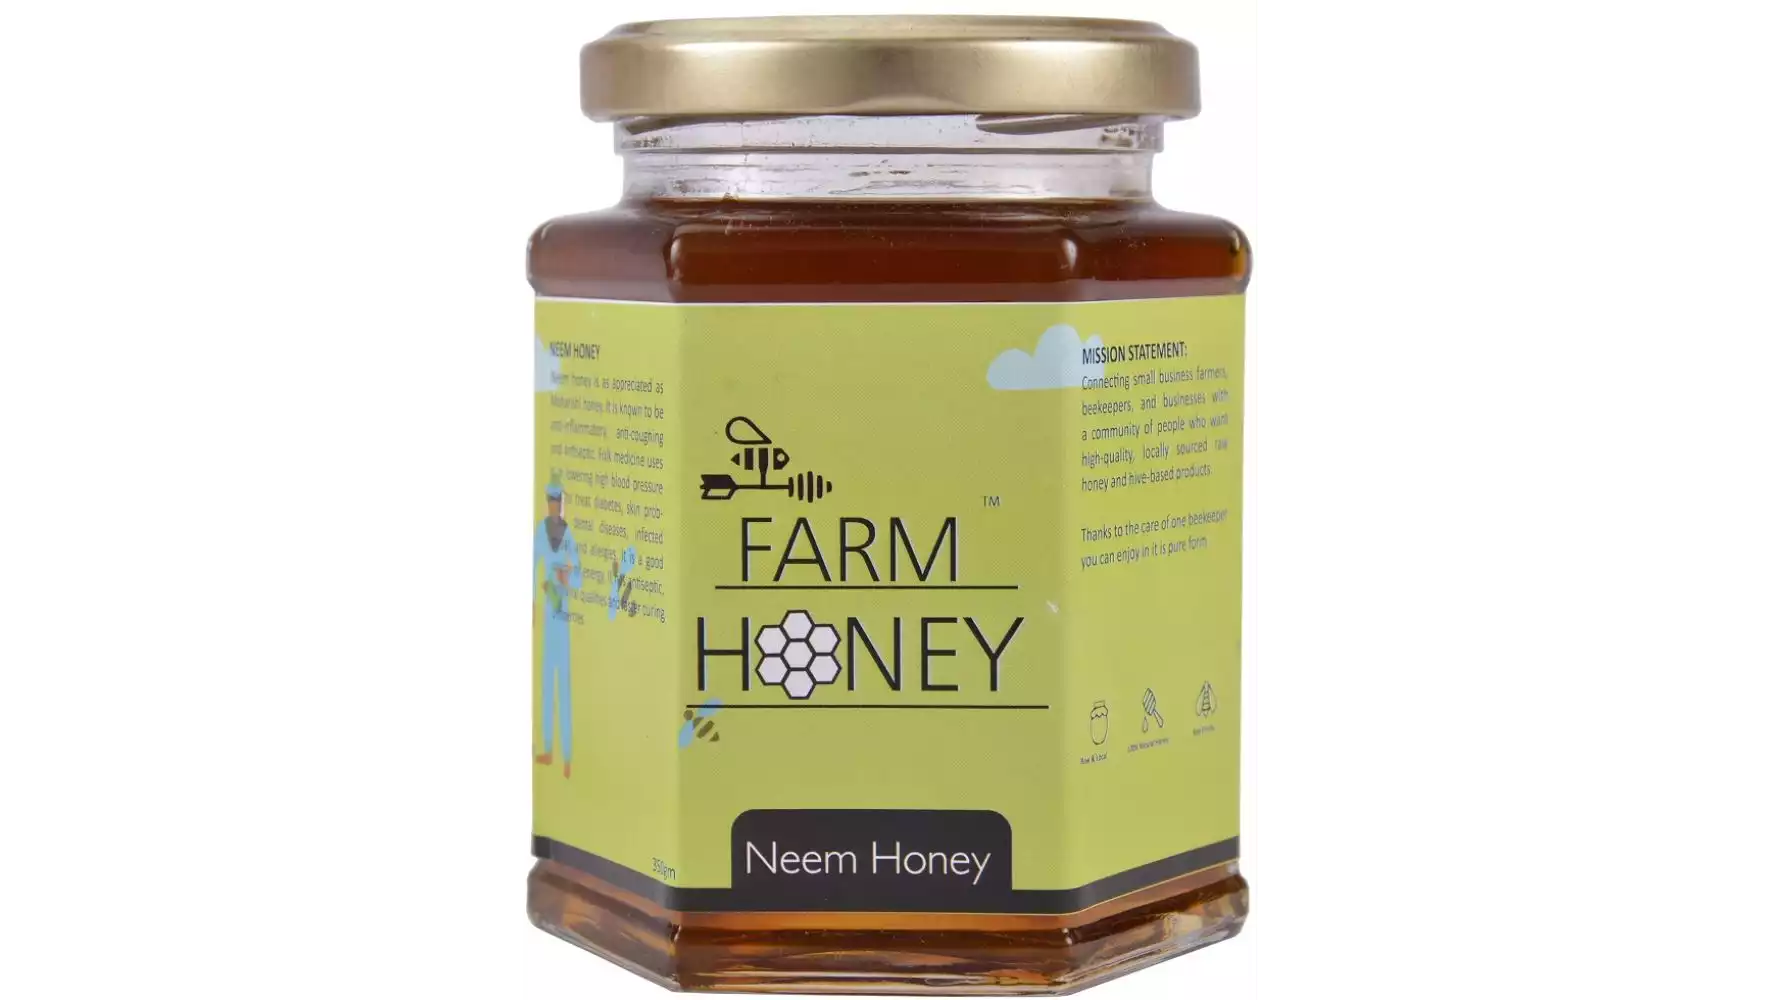 Farm Honey Neem Honey (350g)